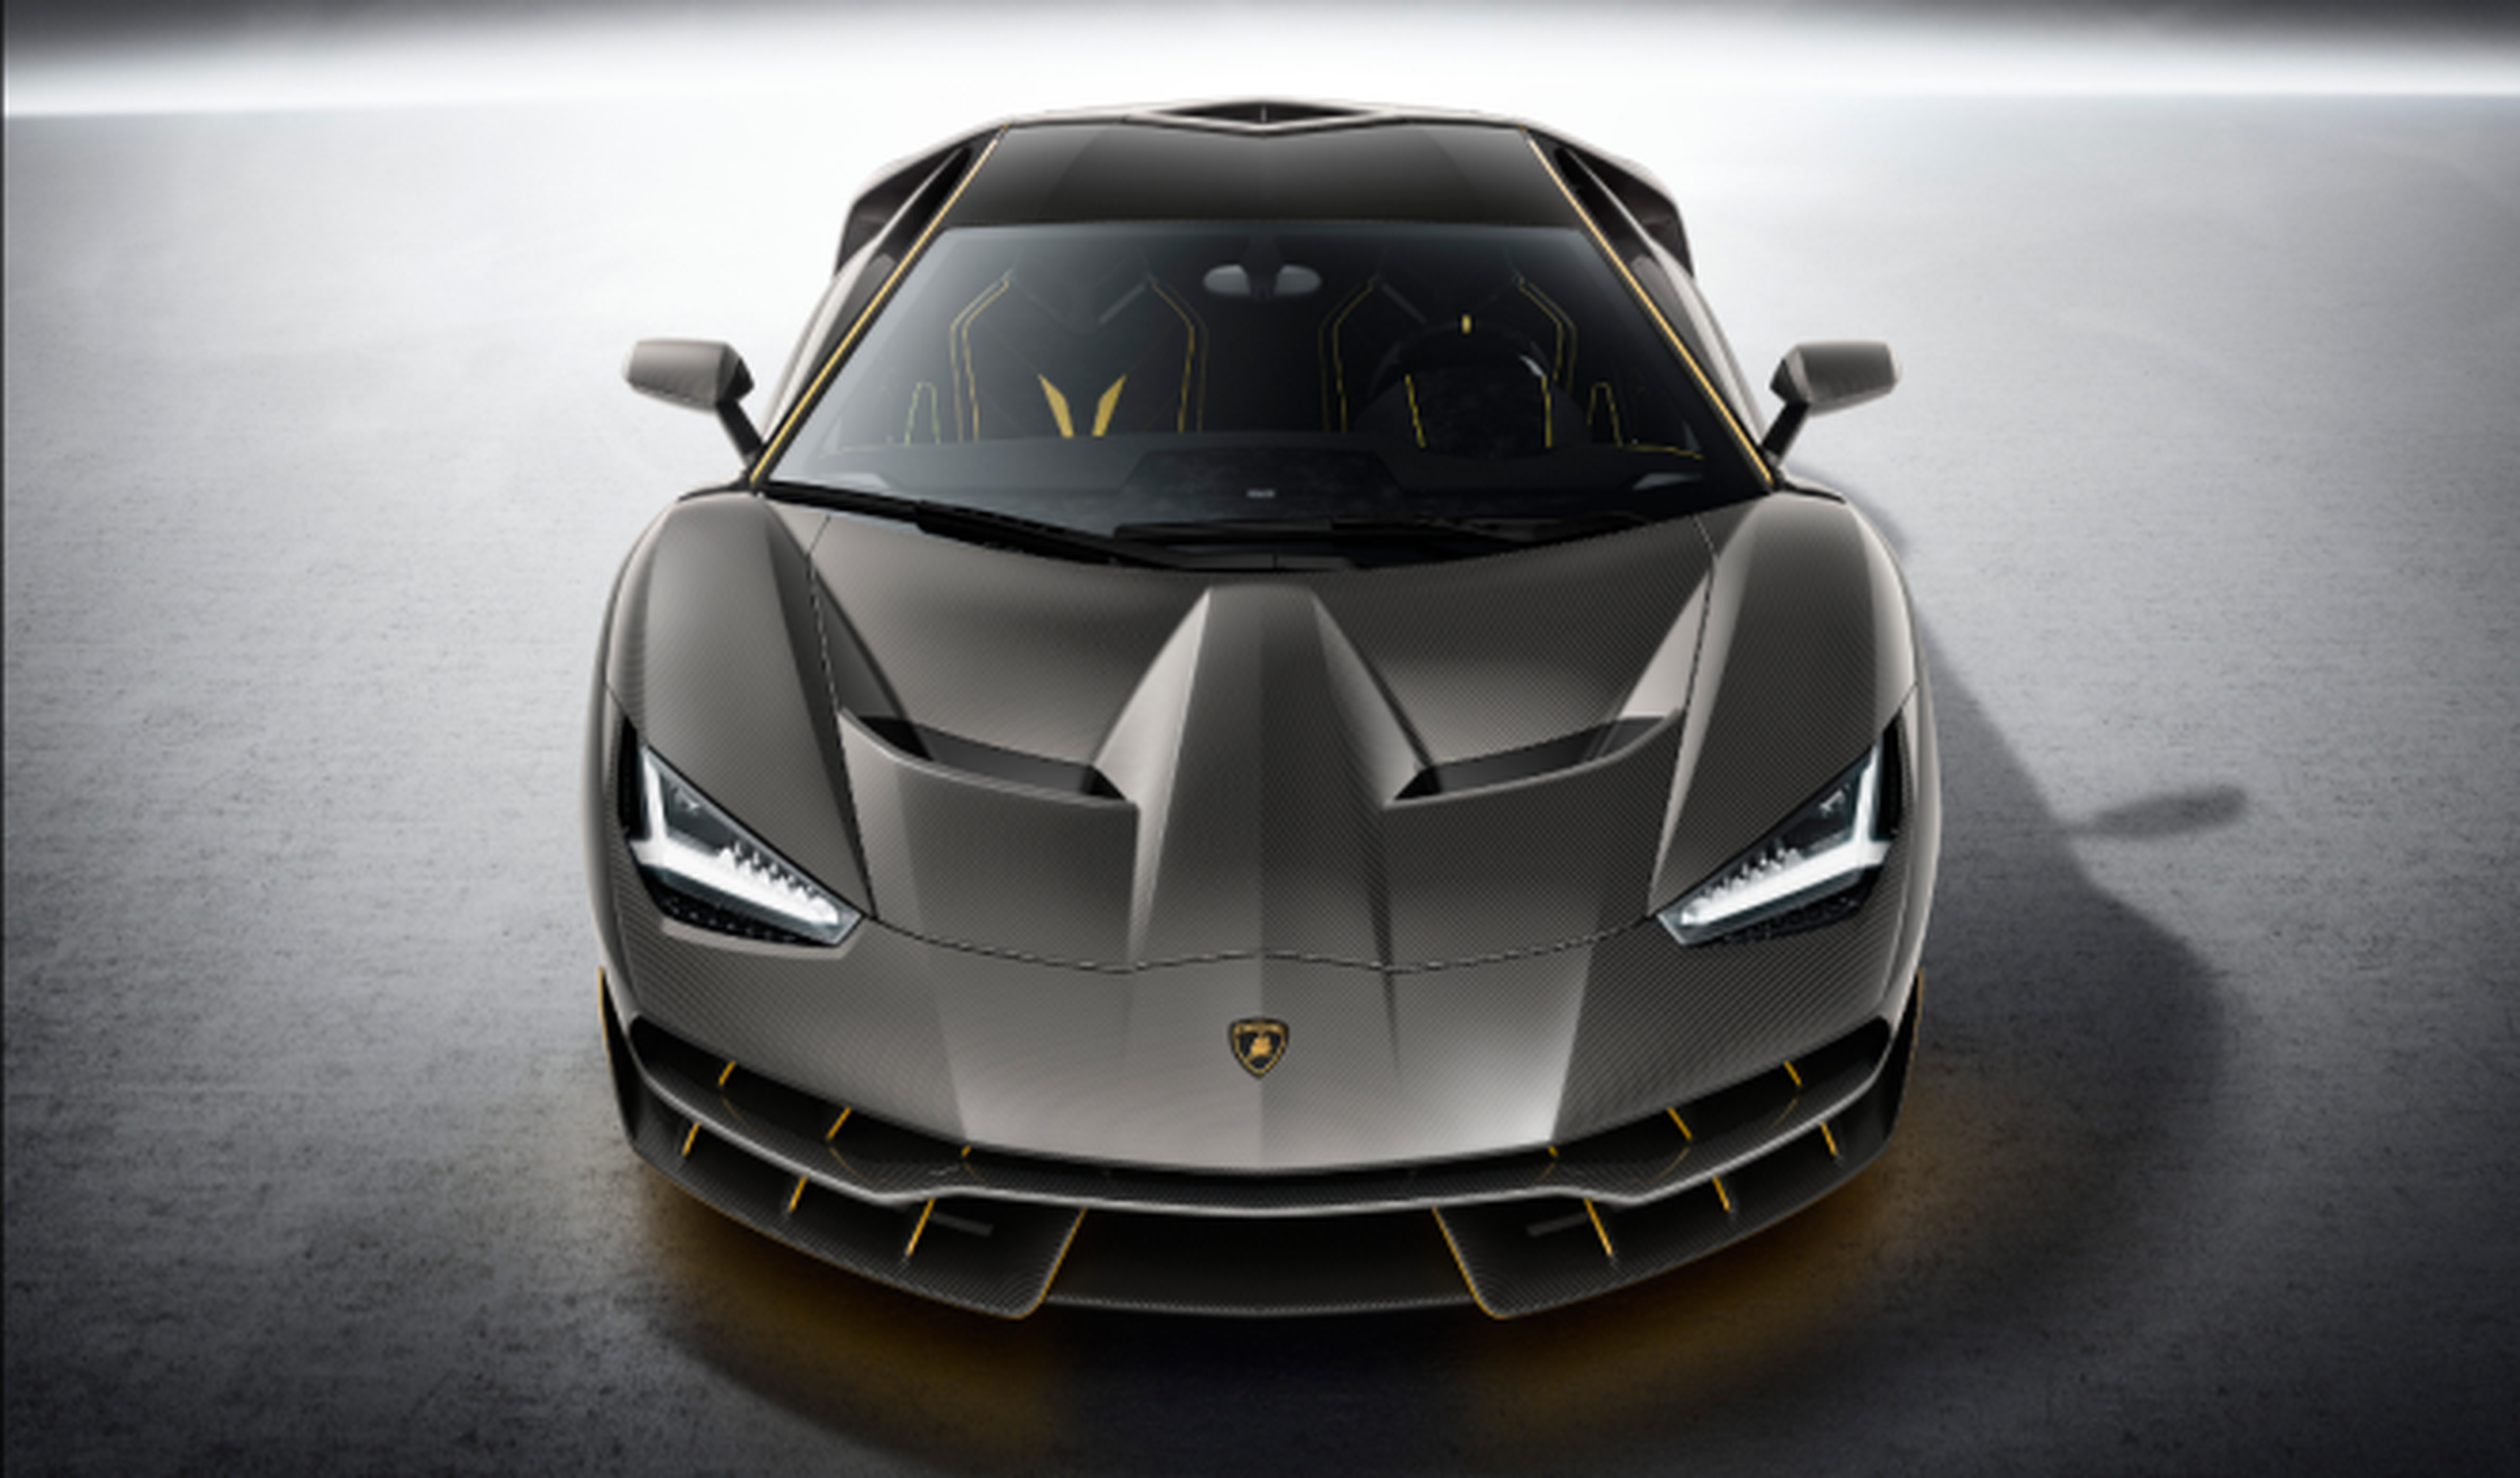 Confirmado (o casi) el Lamborghini eléctrico para 2025